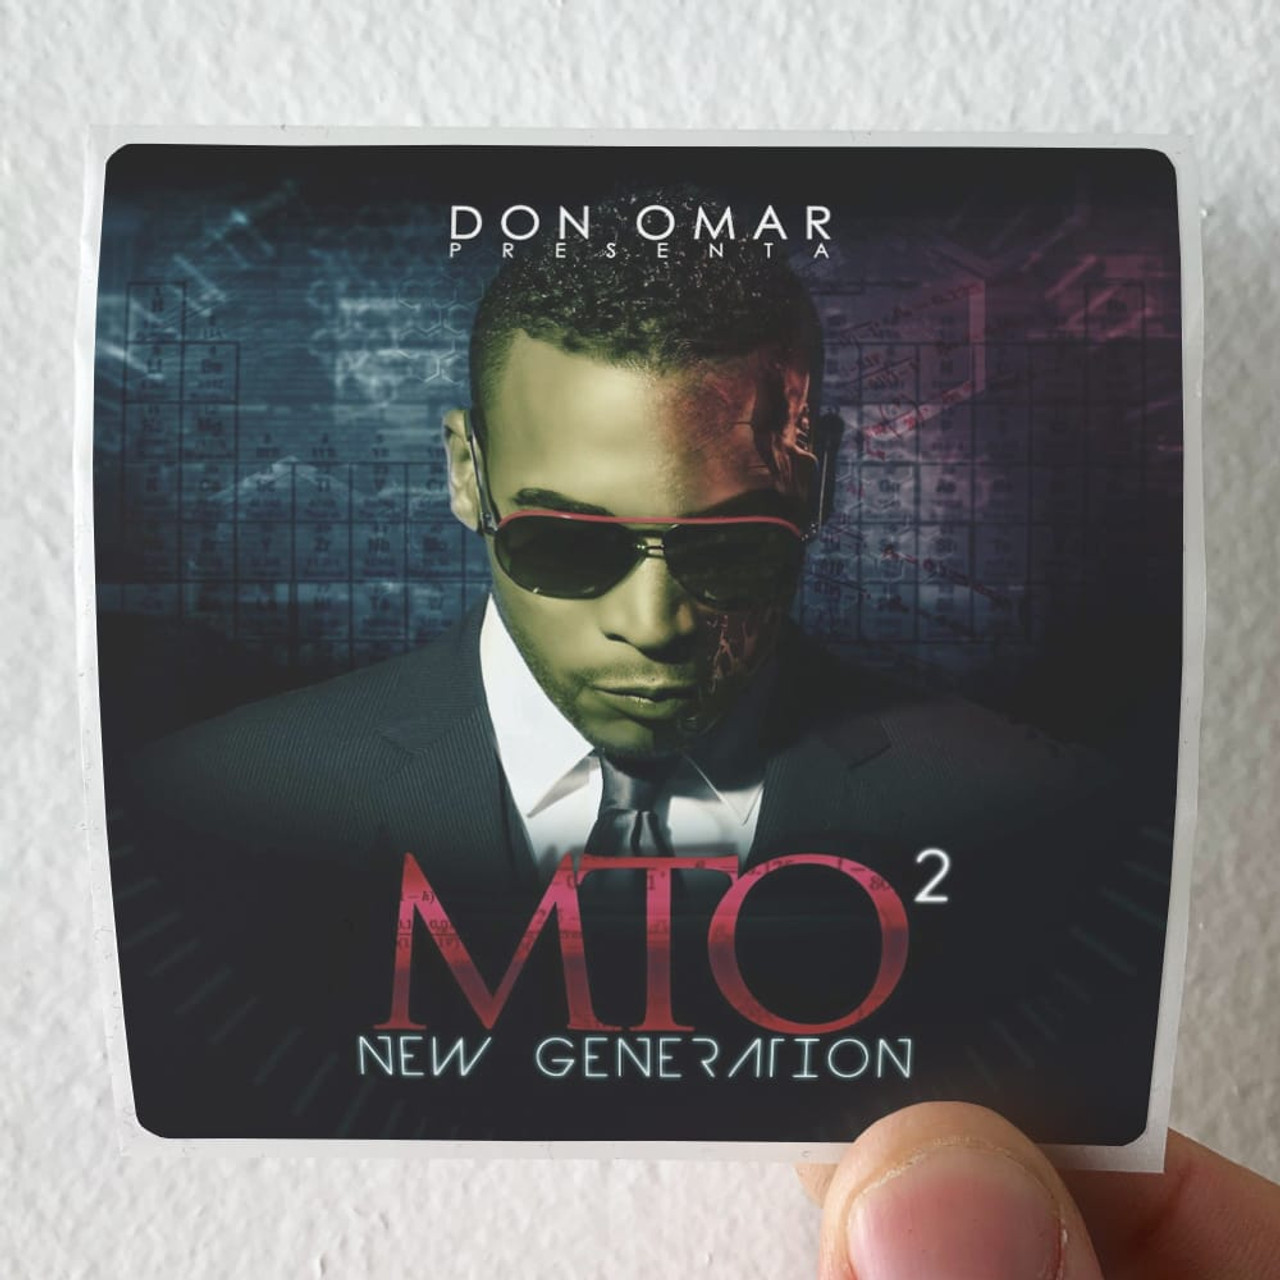 Don Omar Mto New Generation Album Cover Sticker